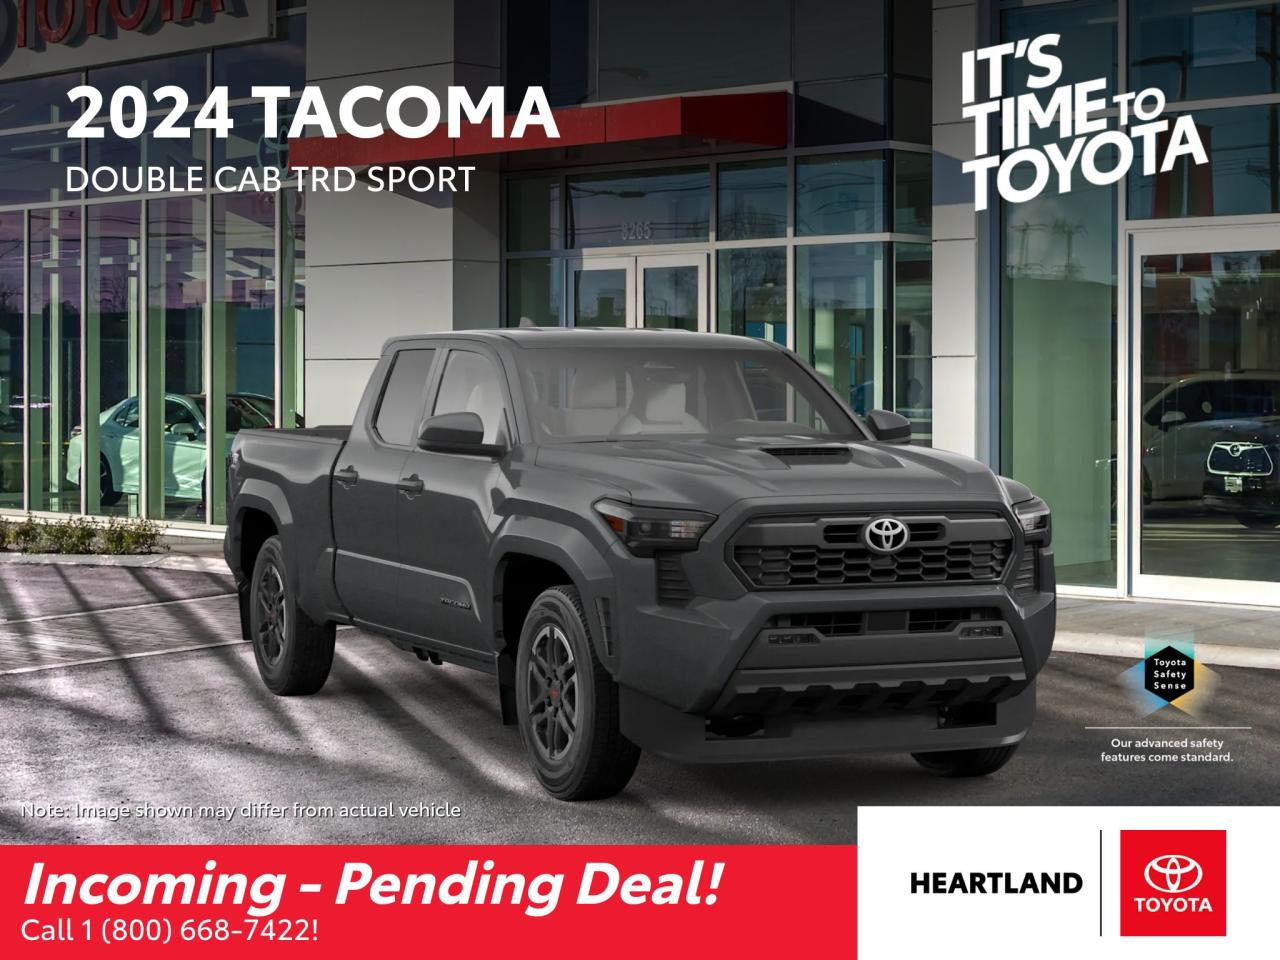 2024 Toyota Tacoma 4X4 Double Cab Photo0